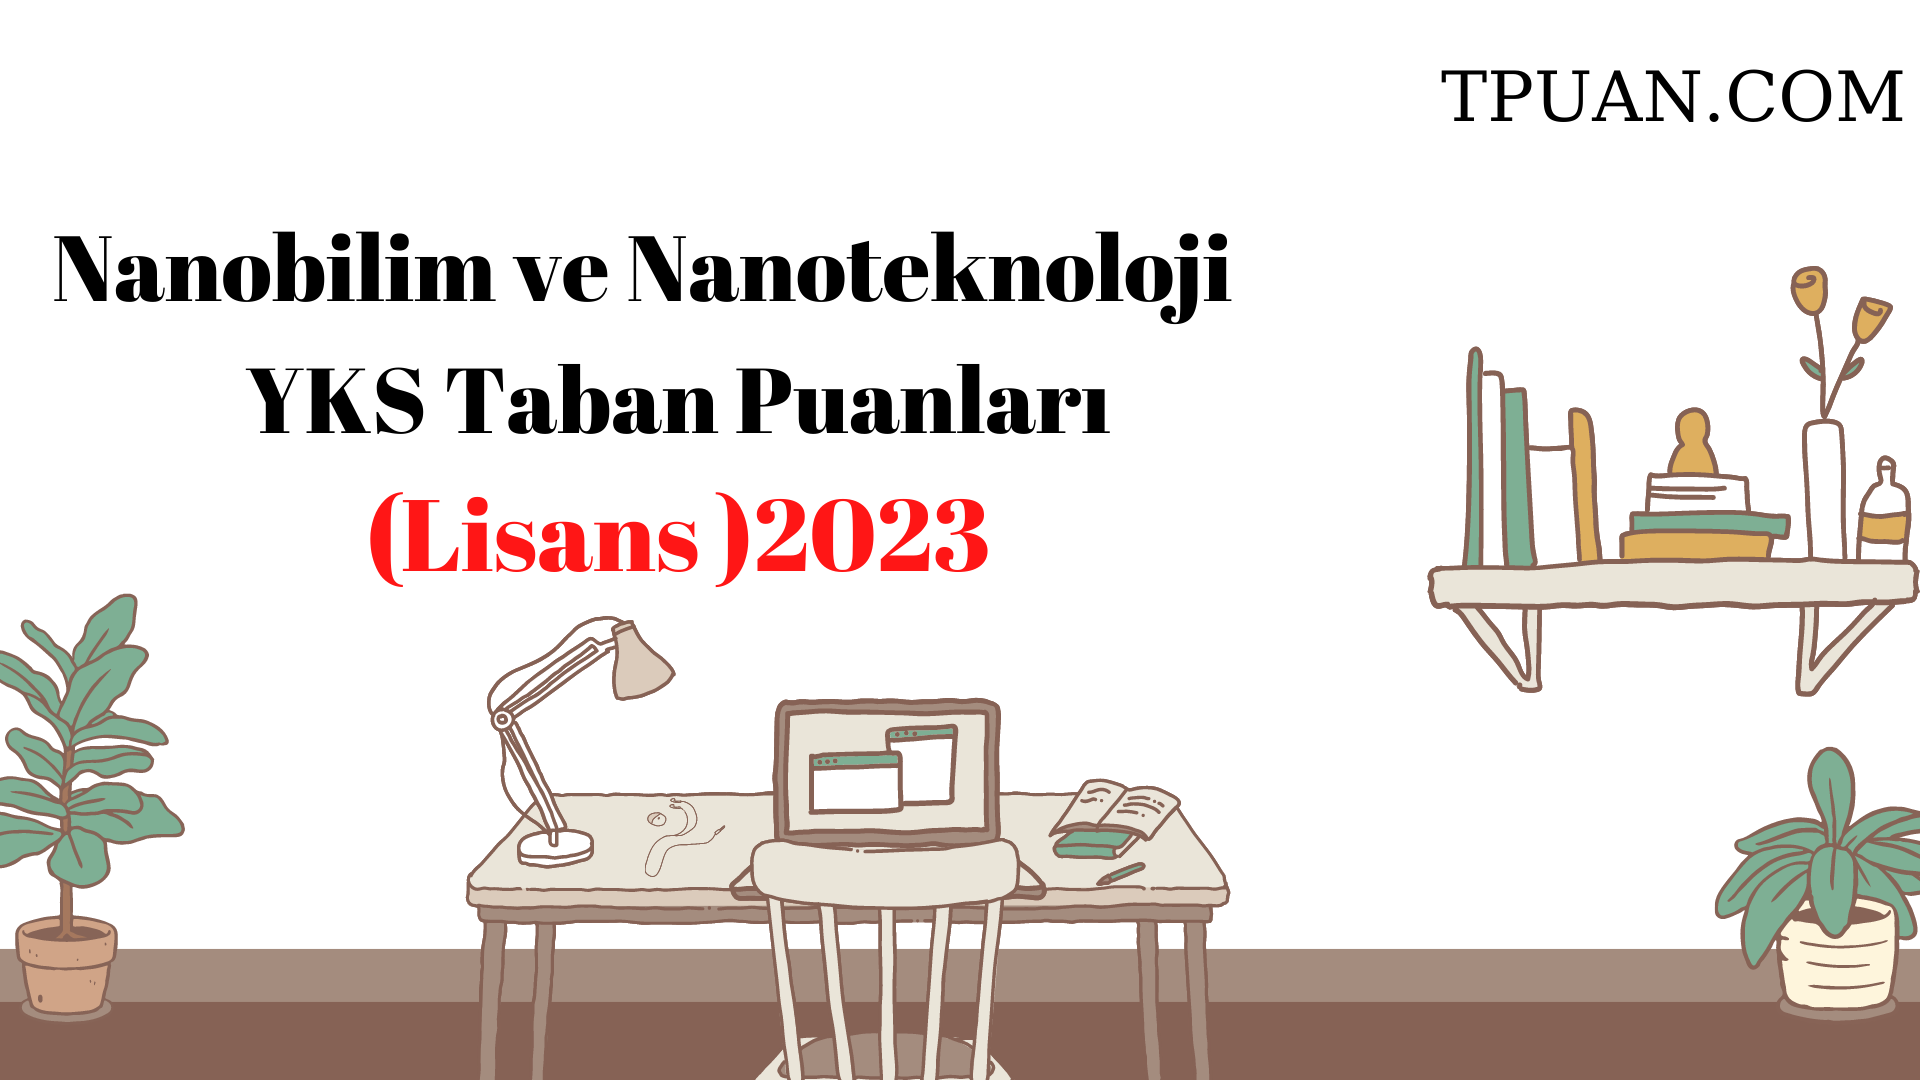  Nanobilim ve Nanoteknoloji Bölümü YKS Taban Puanları (4 Yıllık) 2023